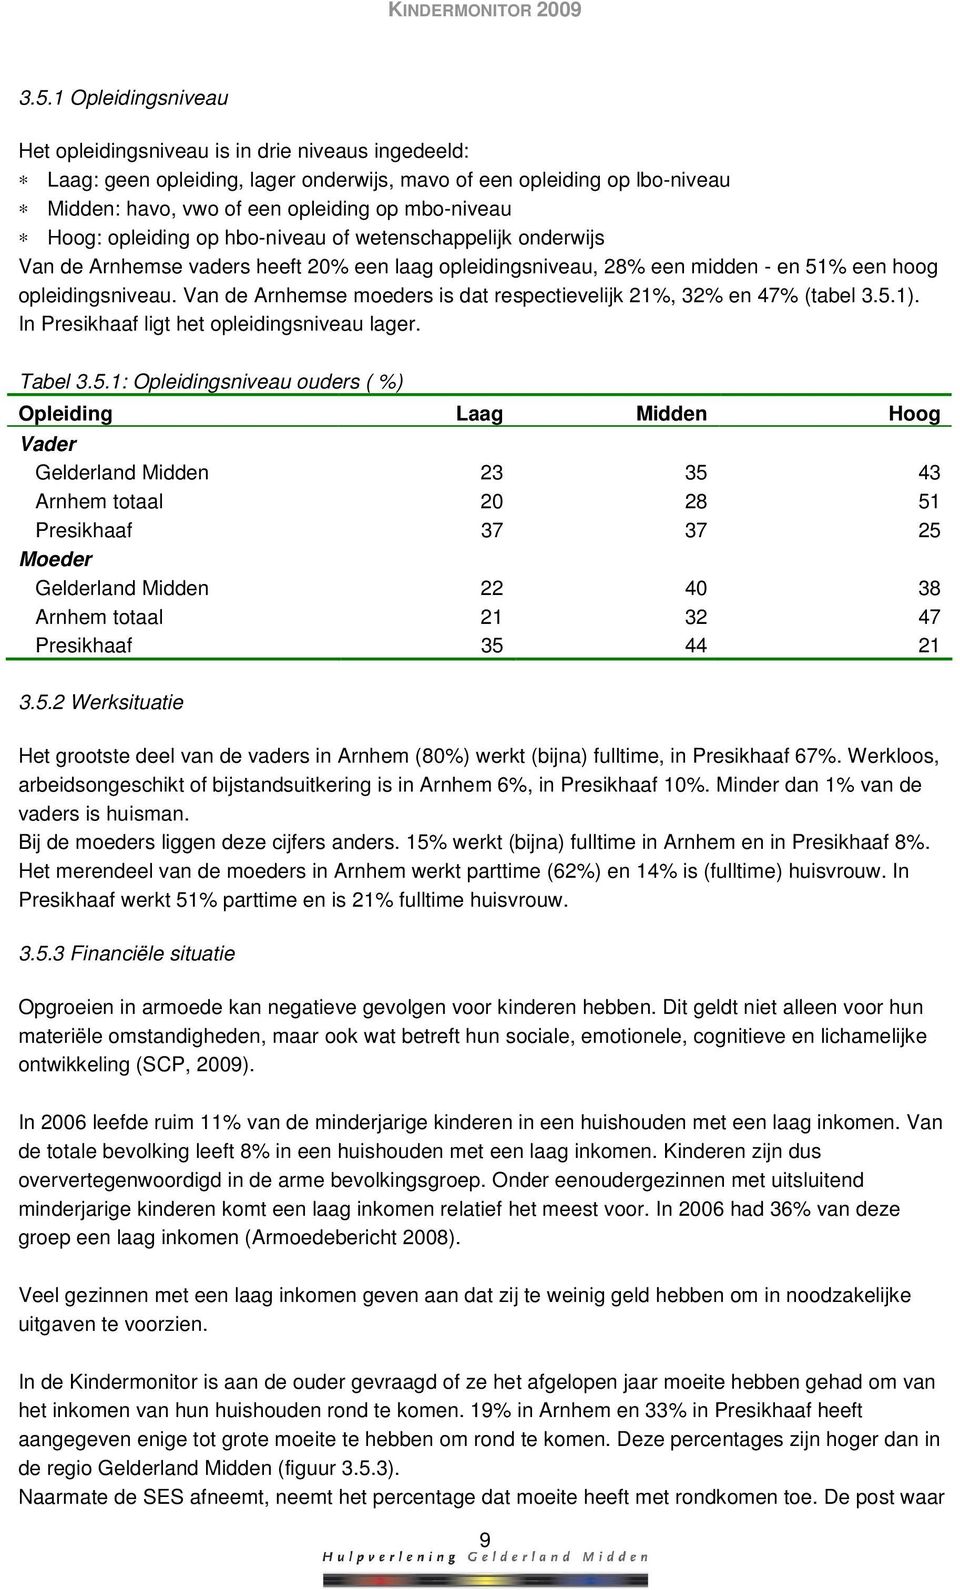 Van de Arnhemse moeders is dat respectievelijk 21%, 32% en 47% (tabel 3.5.